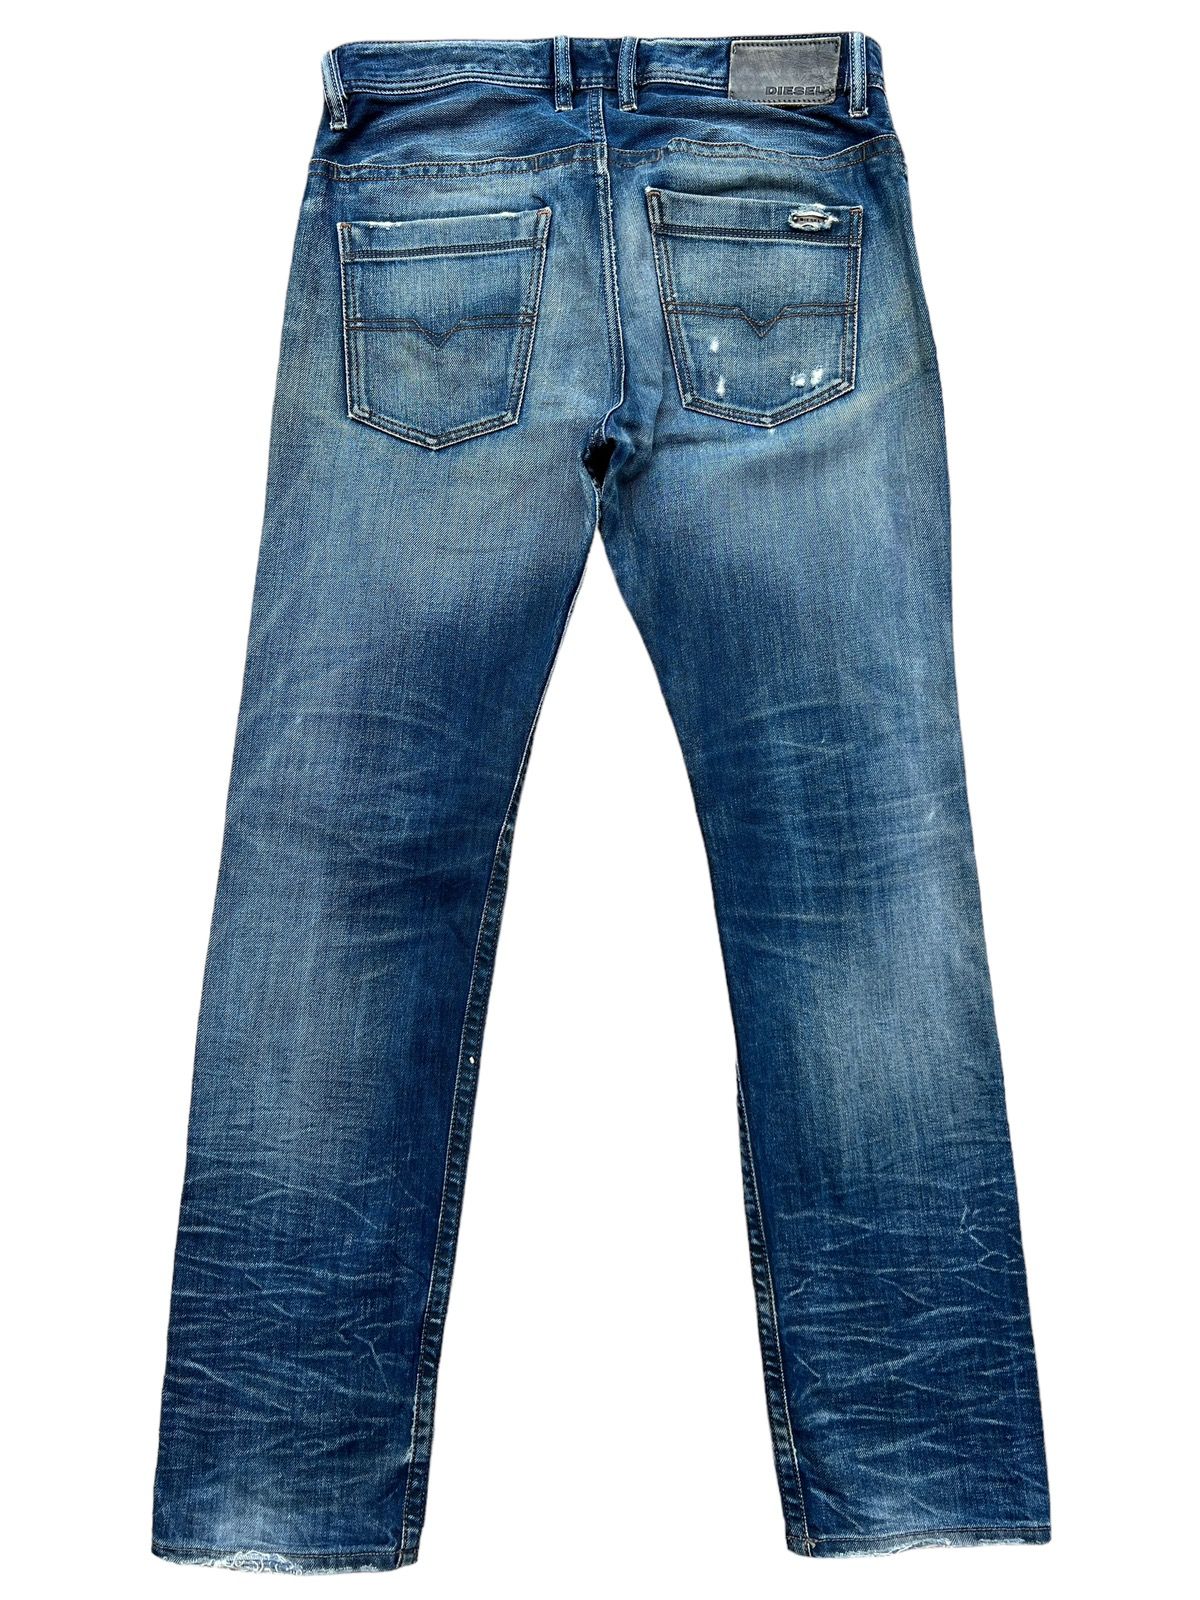 Vintage Diesel Industry Distressed Denim Jeans 32x31 - 3